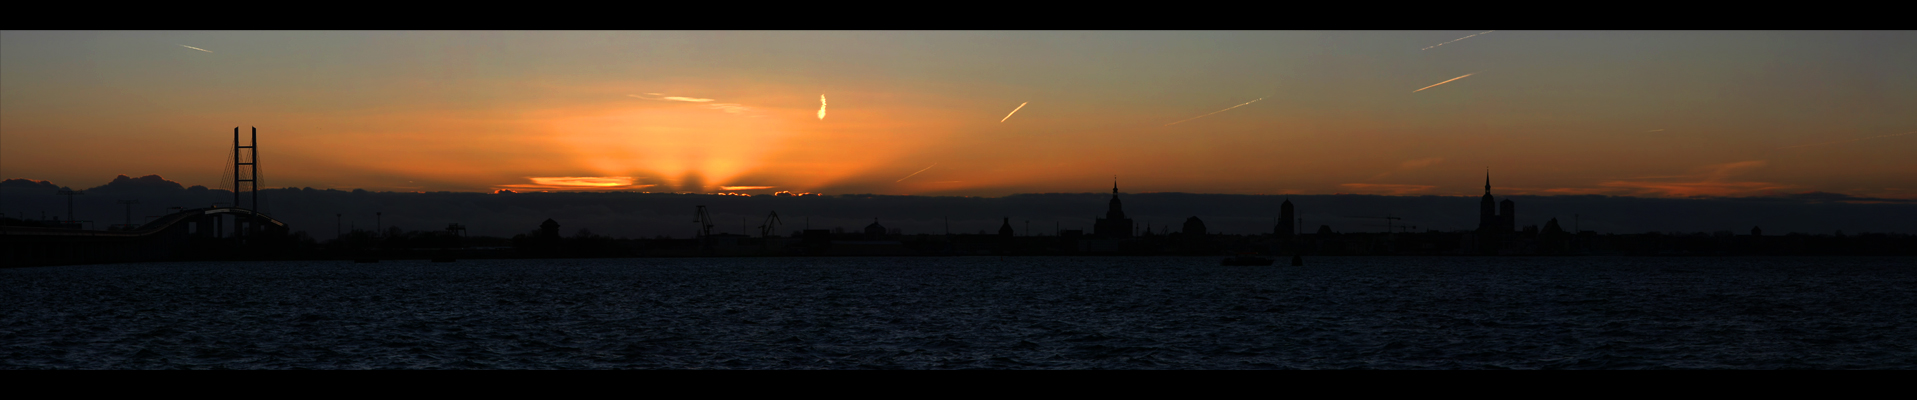 Sunset in Stralsund